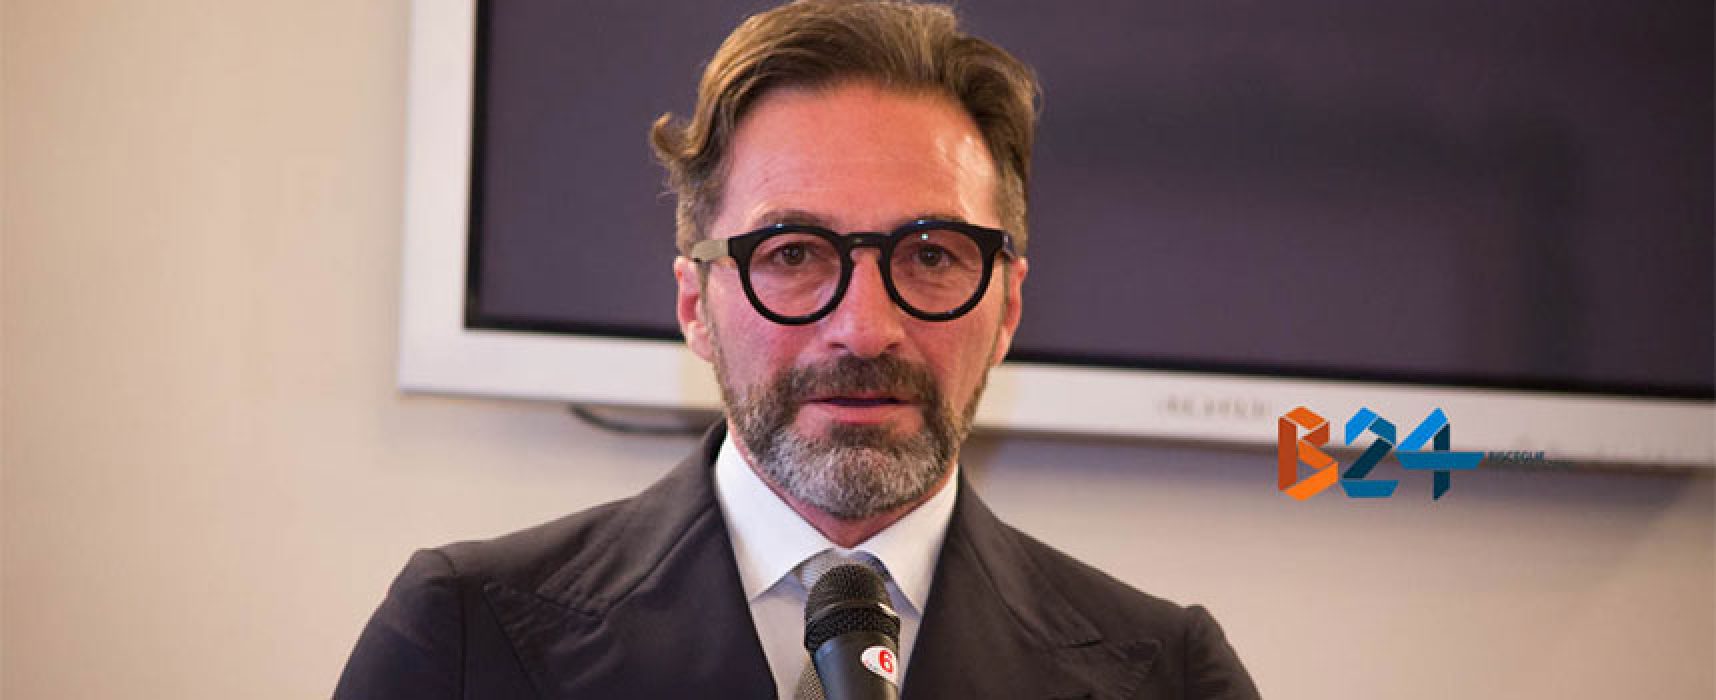 Elezioni politiche, Gianni Casella candidato alla Camera nel “Terzo Polo”